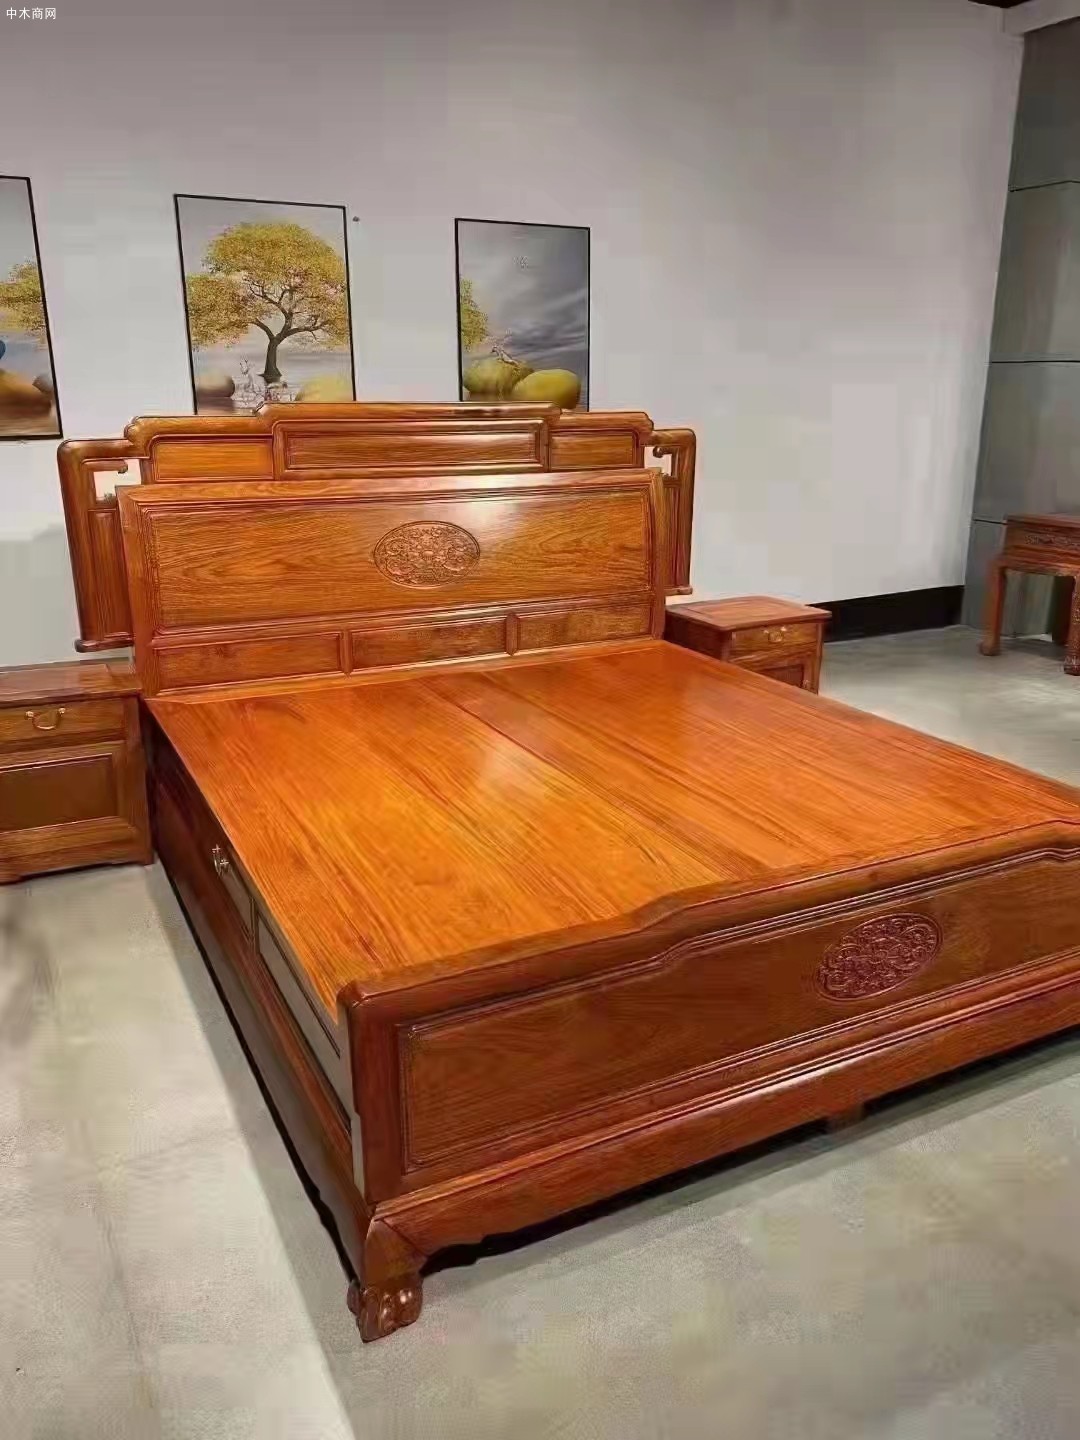 凭祥万世千秋缅甸花梨木的大床要用烫蜡工艺及红木家具价格及图片品牌